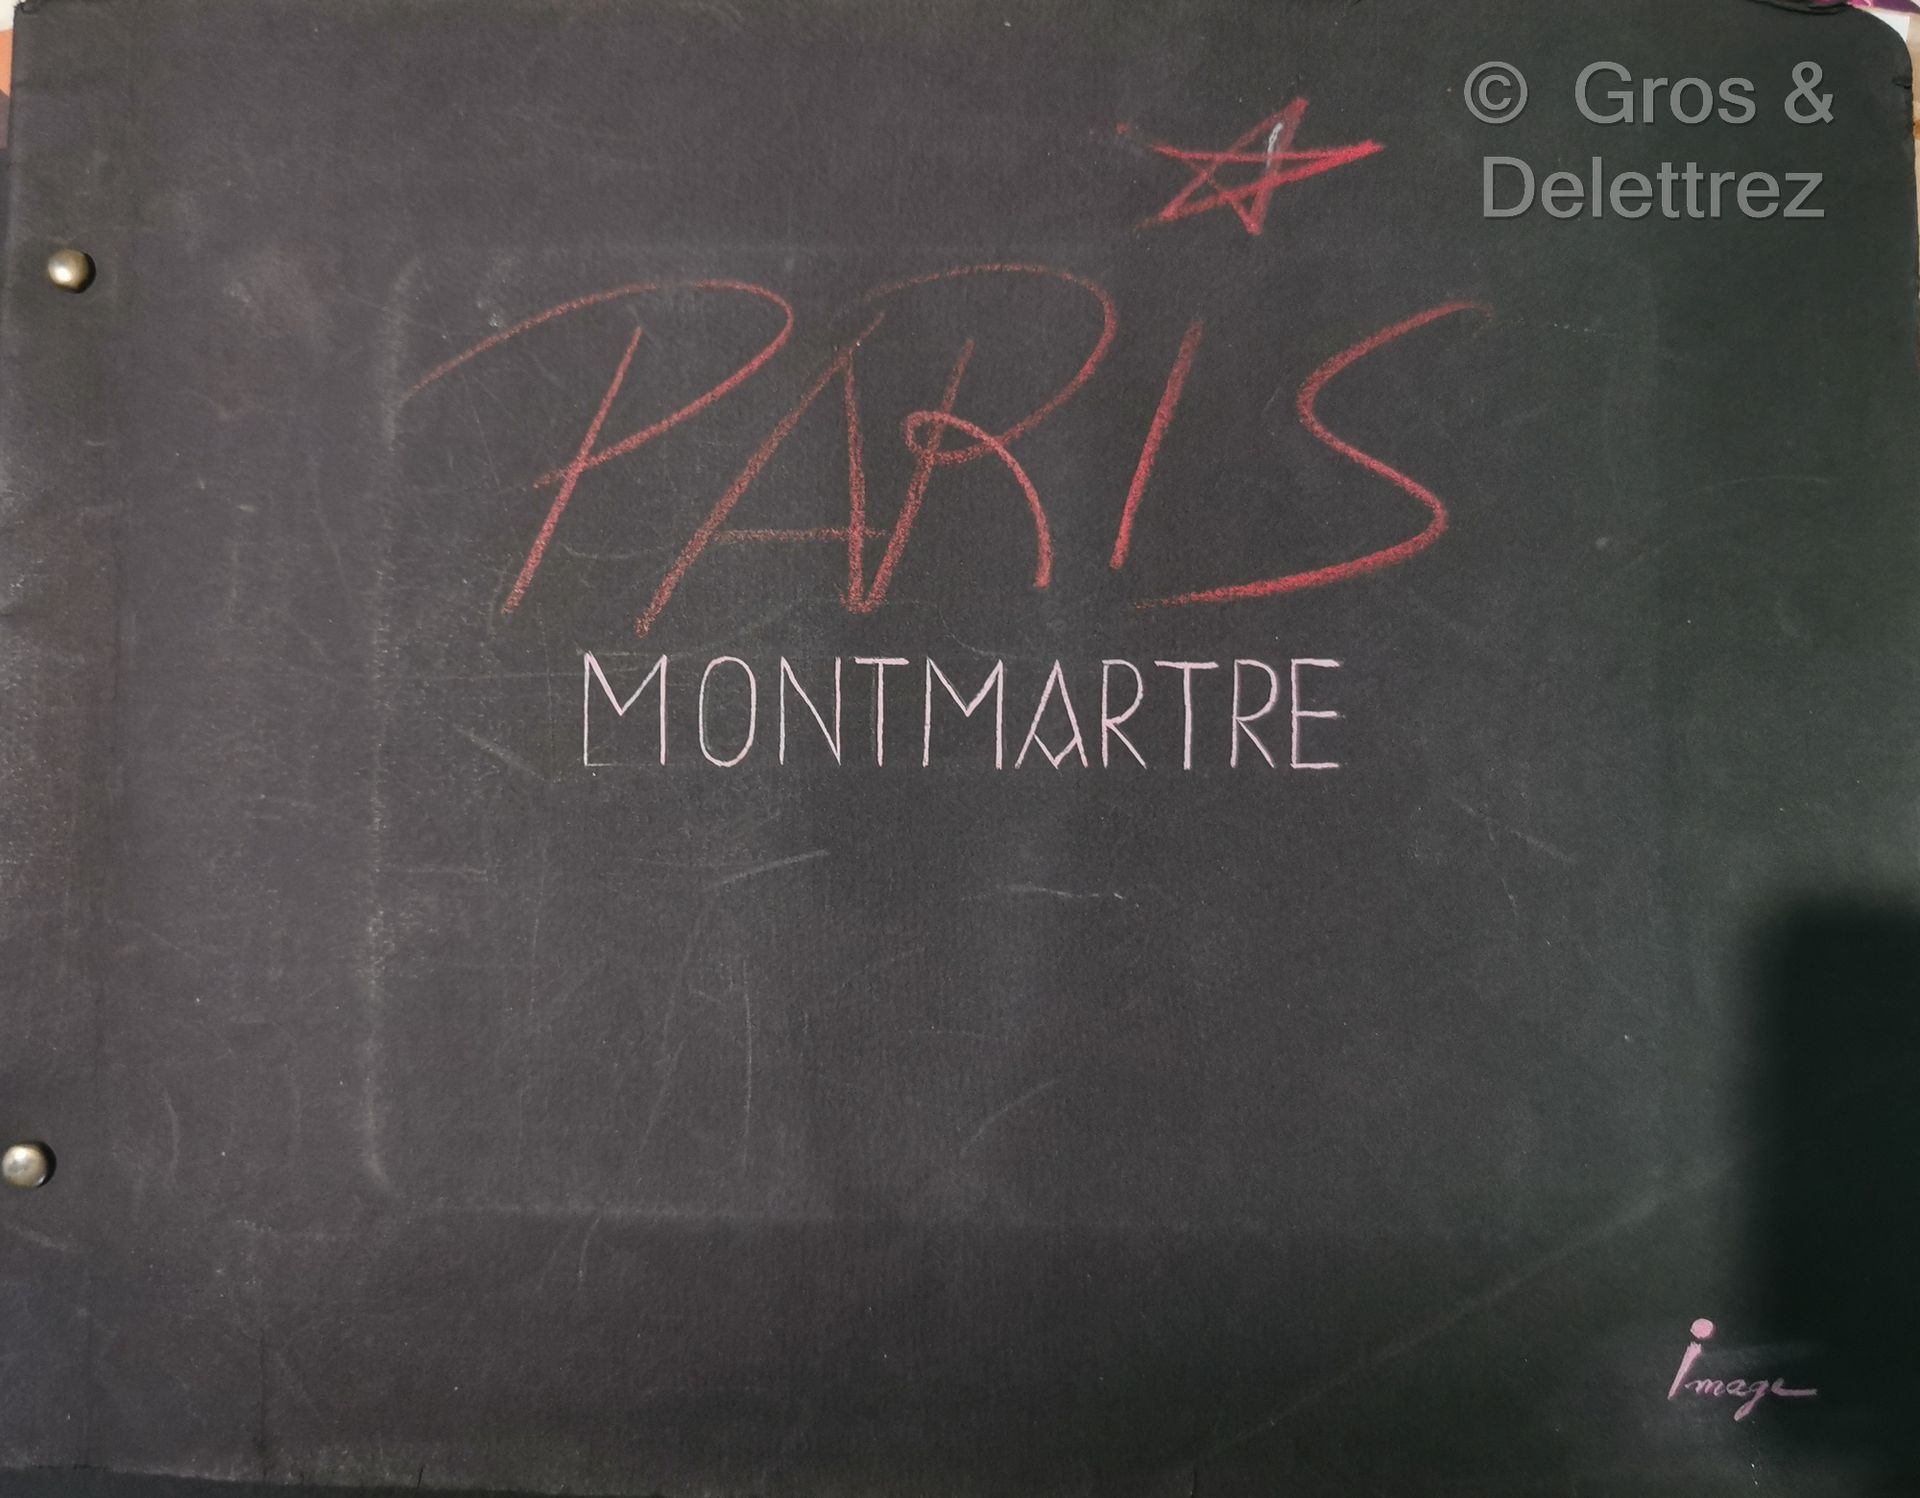 Null Jean IMAGE 
Paris Montmartre
Gouaches on paper